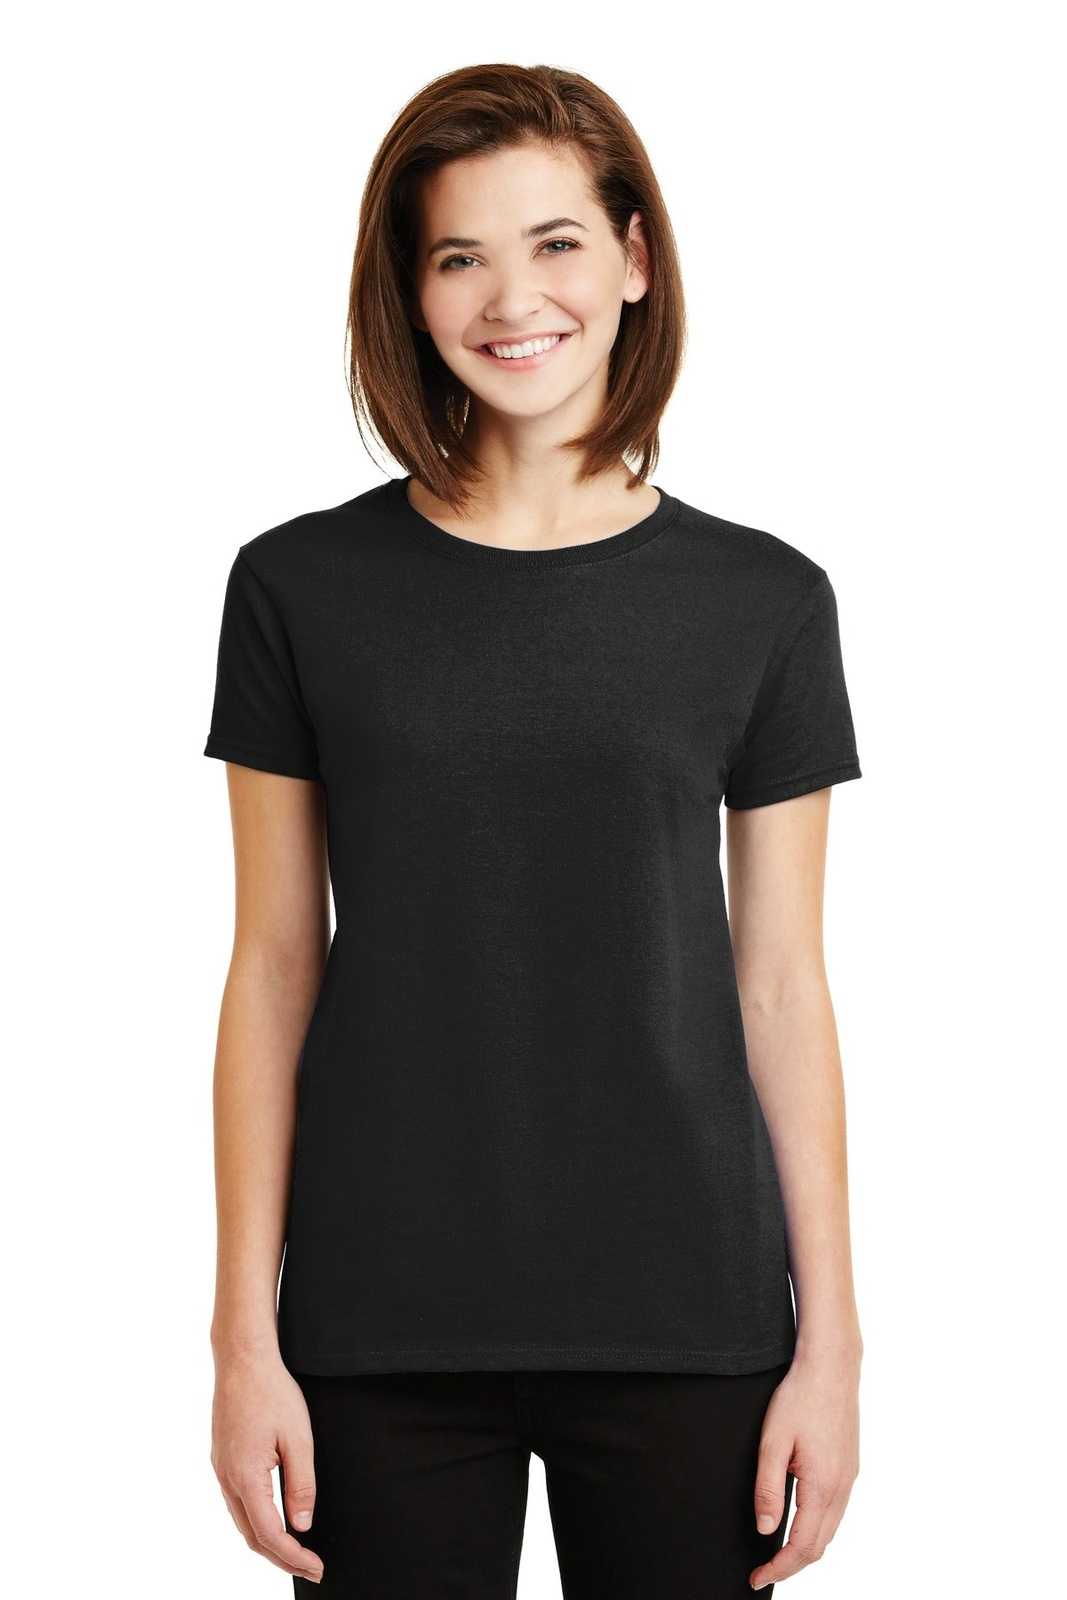 Gildan 2000L Ladies Ultra Cotton 100% Cotton T-Shirt - Black - HIT a Double